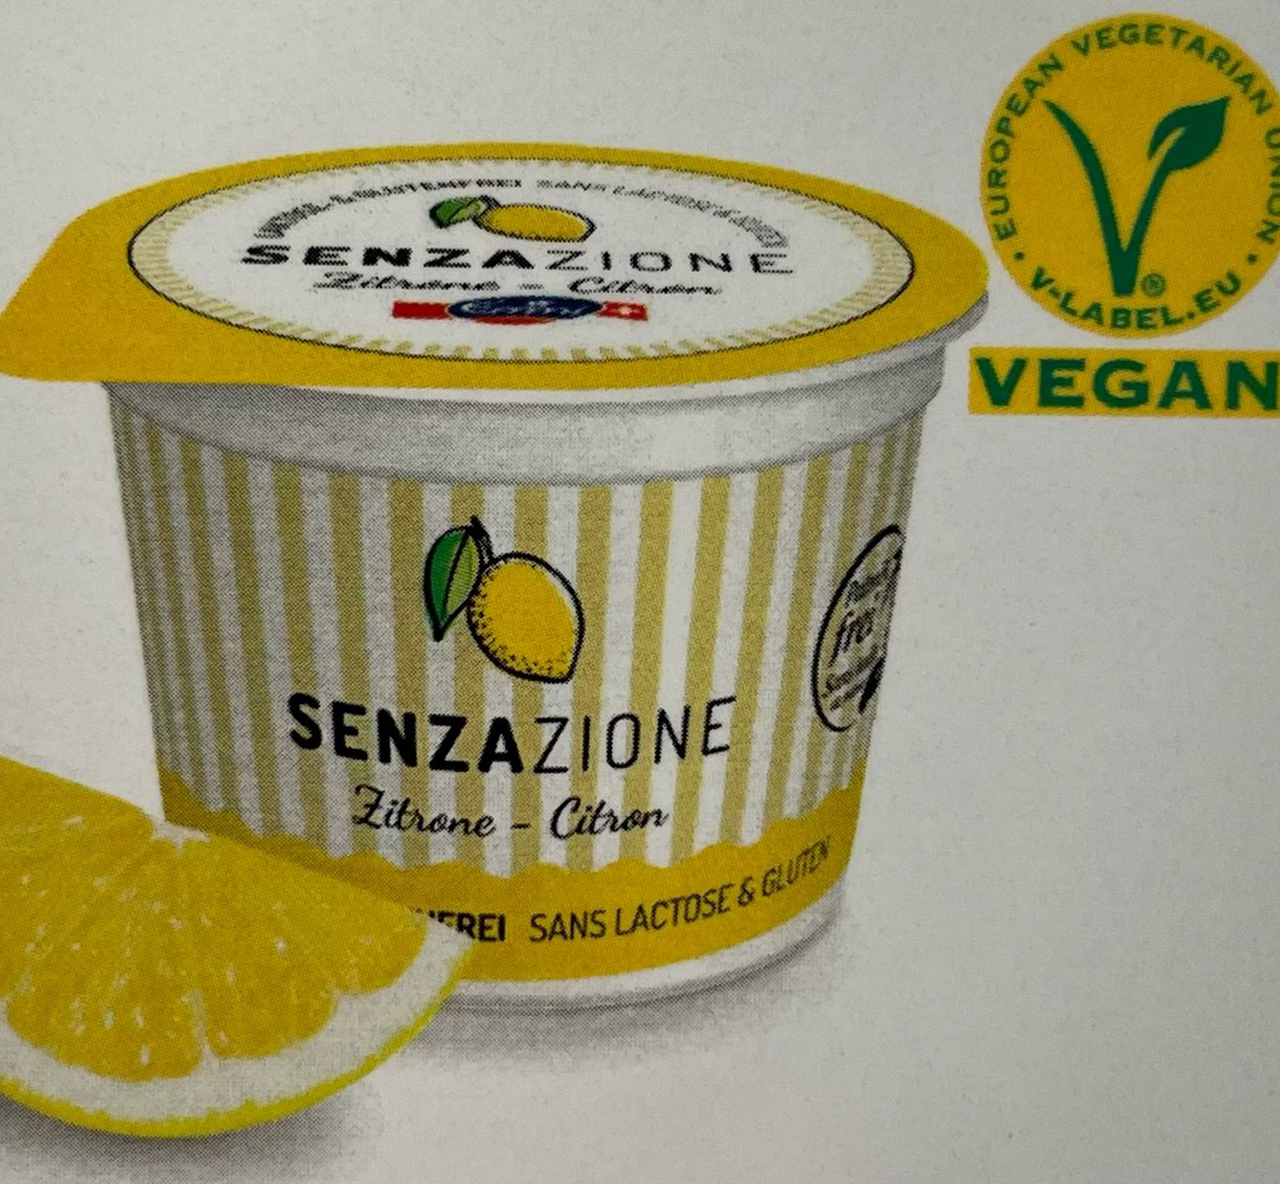 Senzazione Zitrone Glacé